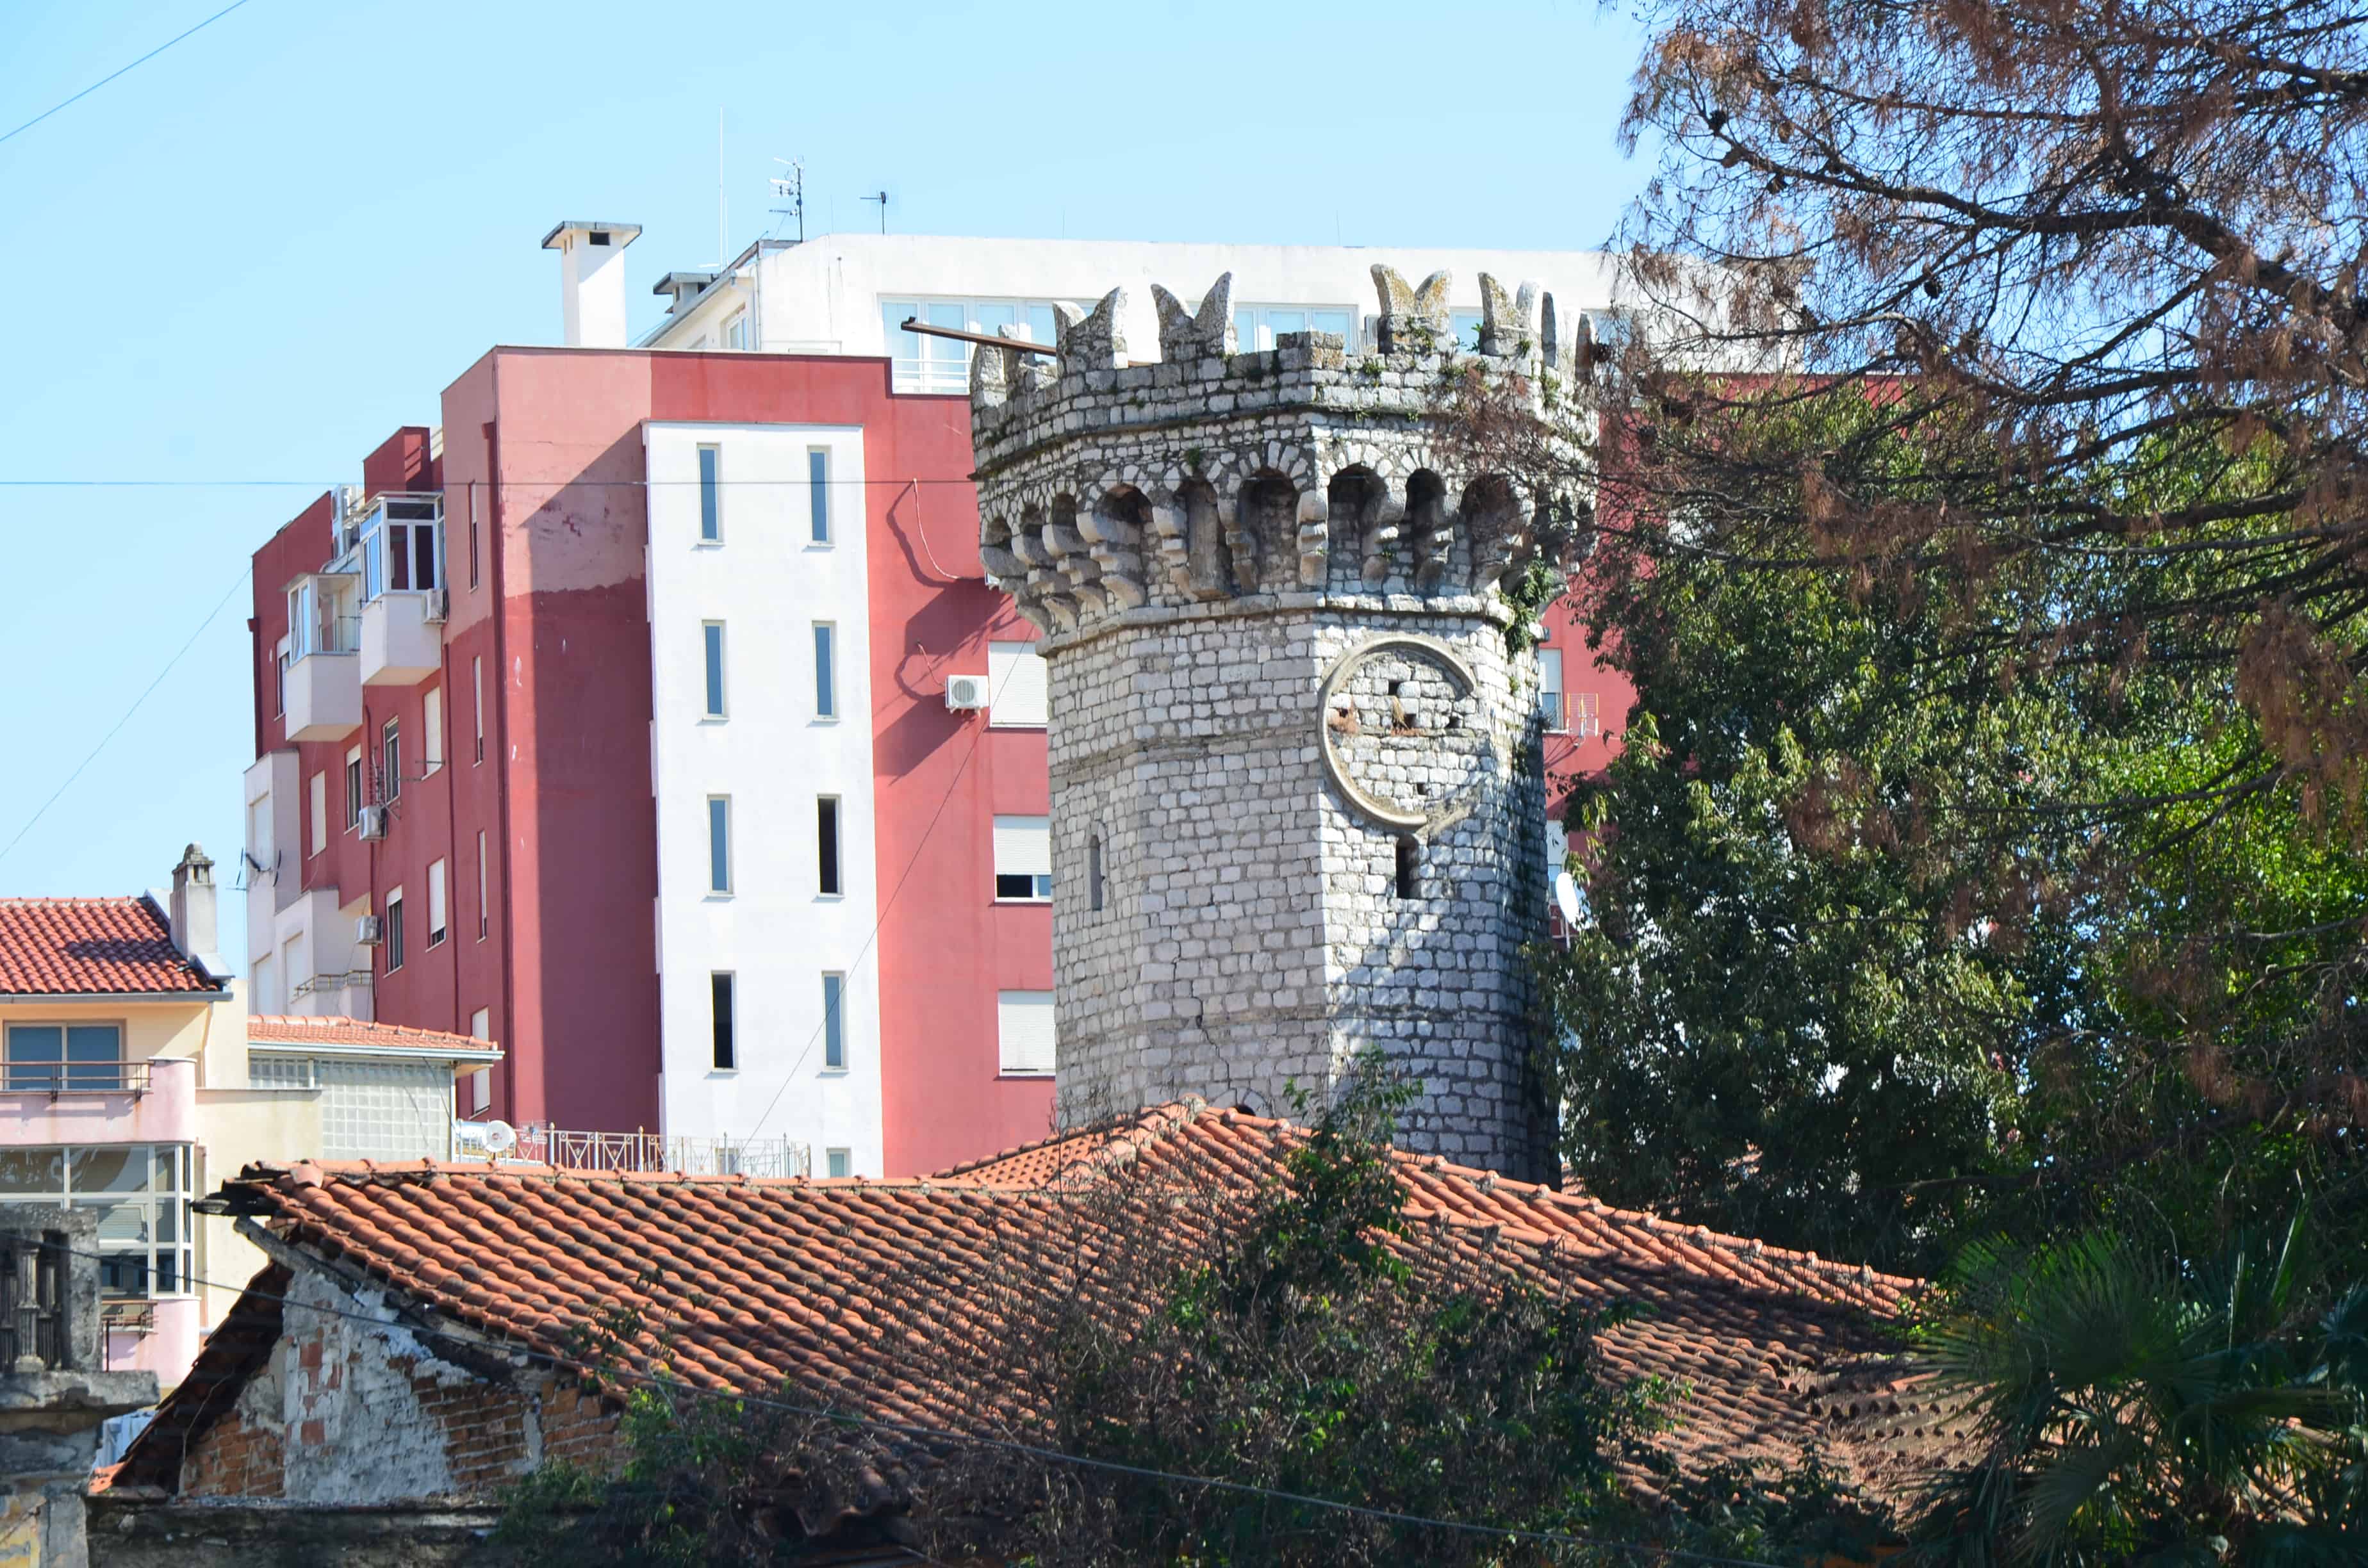 English Tower in Shkodër, Albania